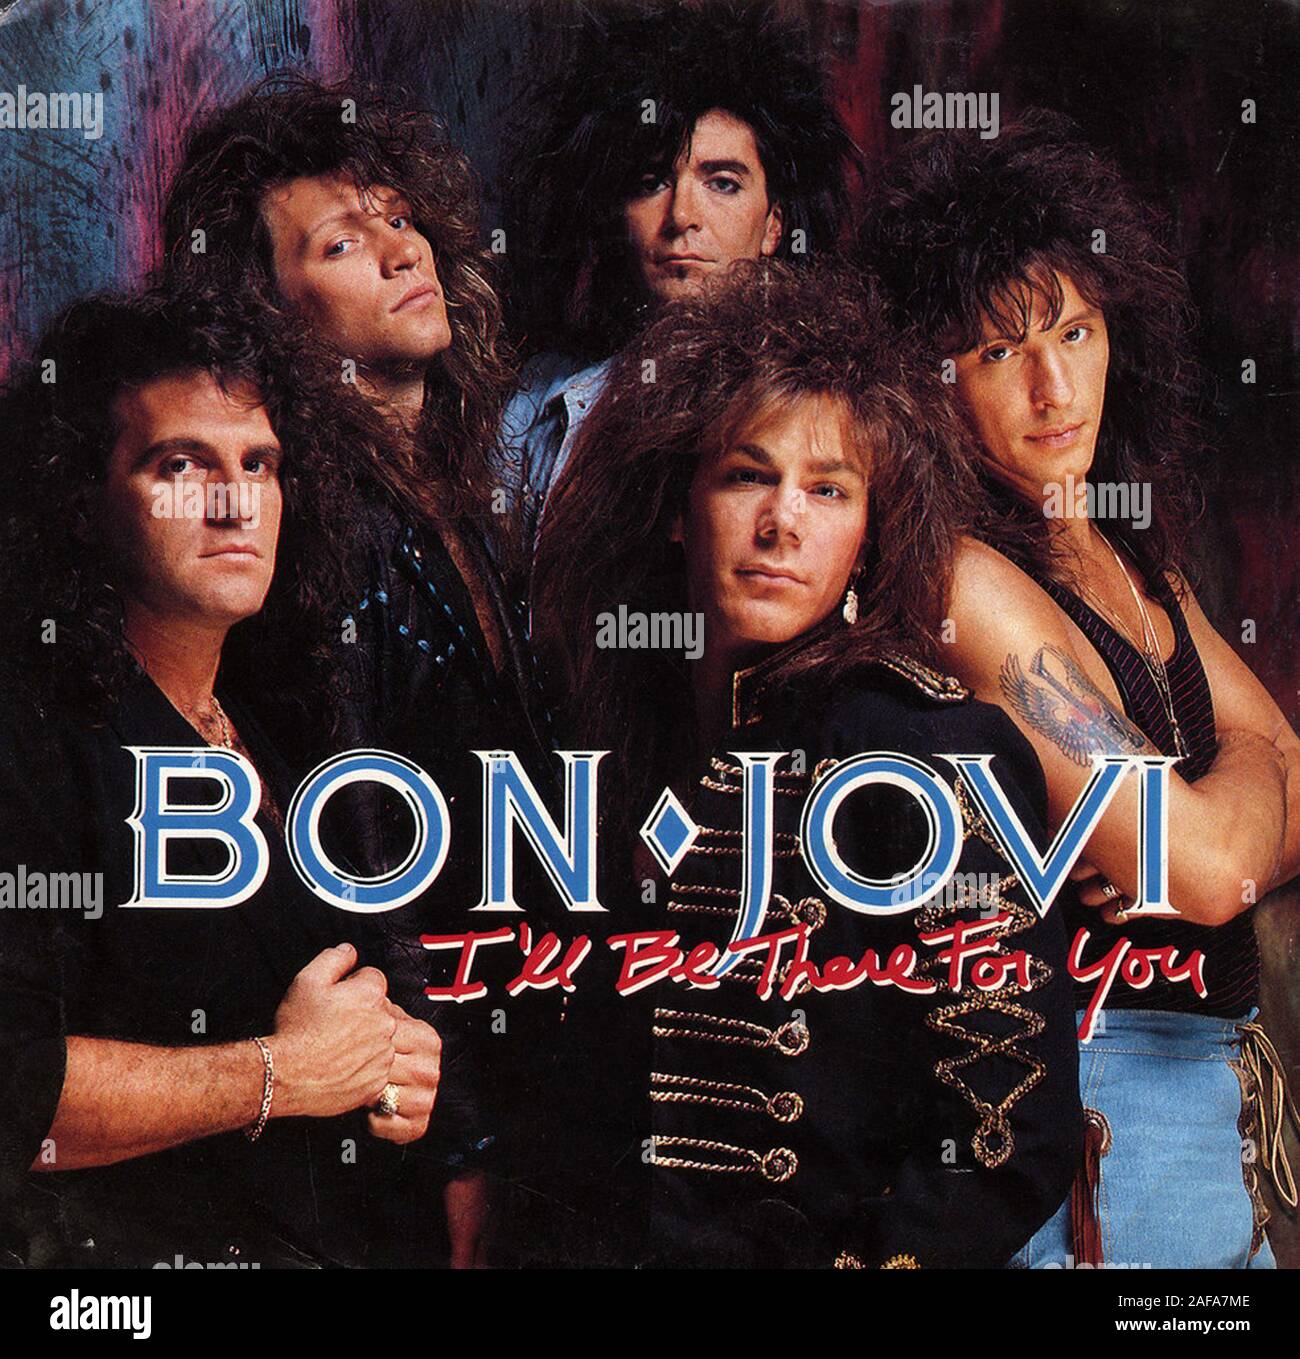 Bon Jovi - ich werde für dich da sein - Vintage Vinyl Album Cover  Stockfotografie - Alamy